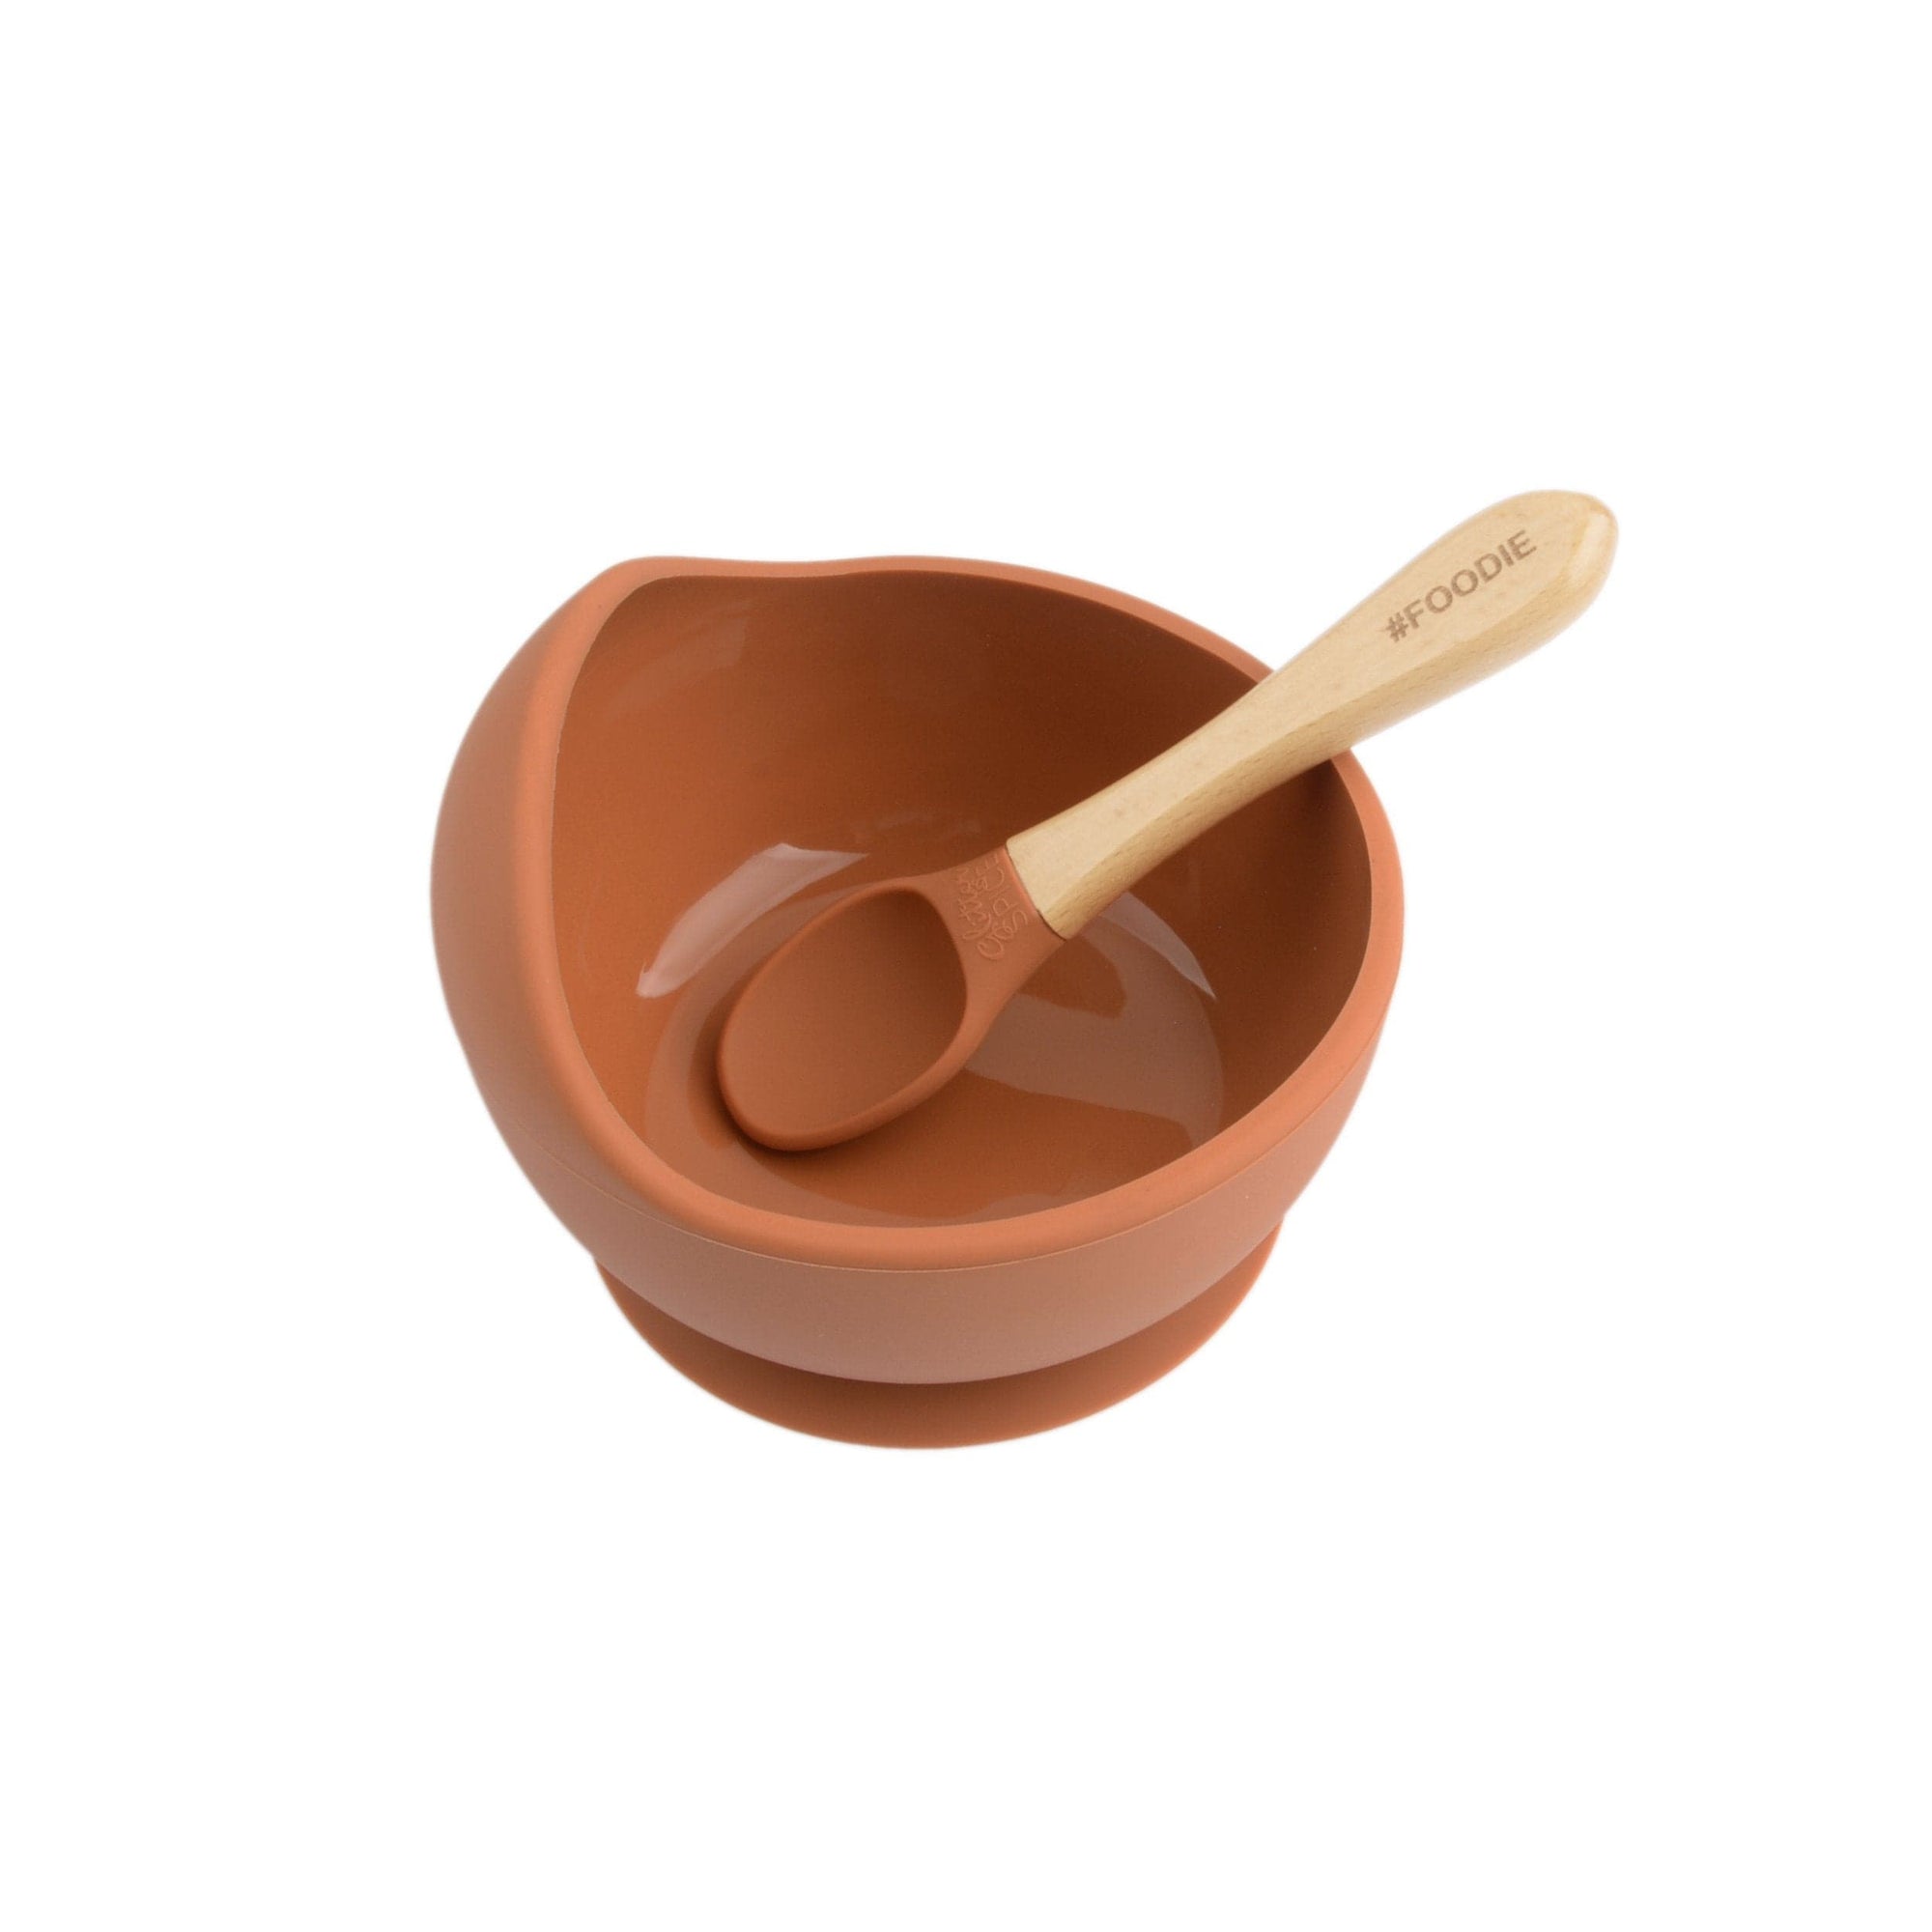 Glitter & Spice silicone bowl set Glitter & Spice Silicone Bowl & Spoon Set - Moroccan Clay